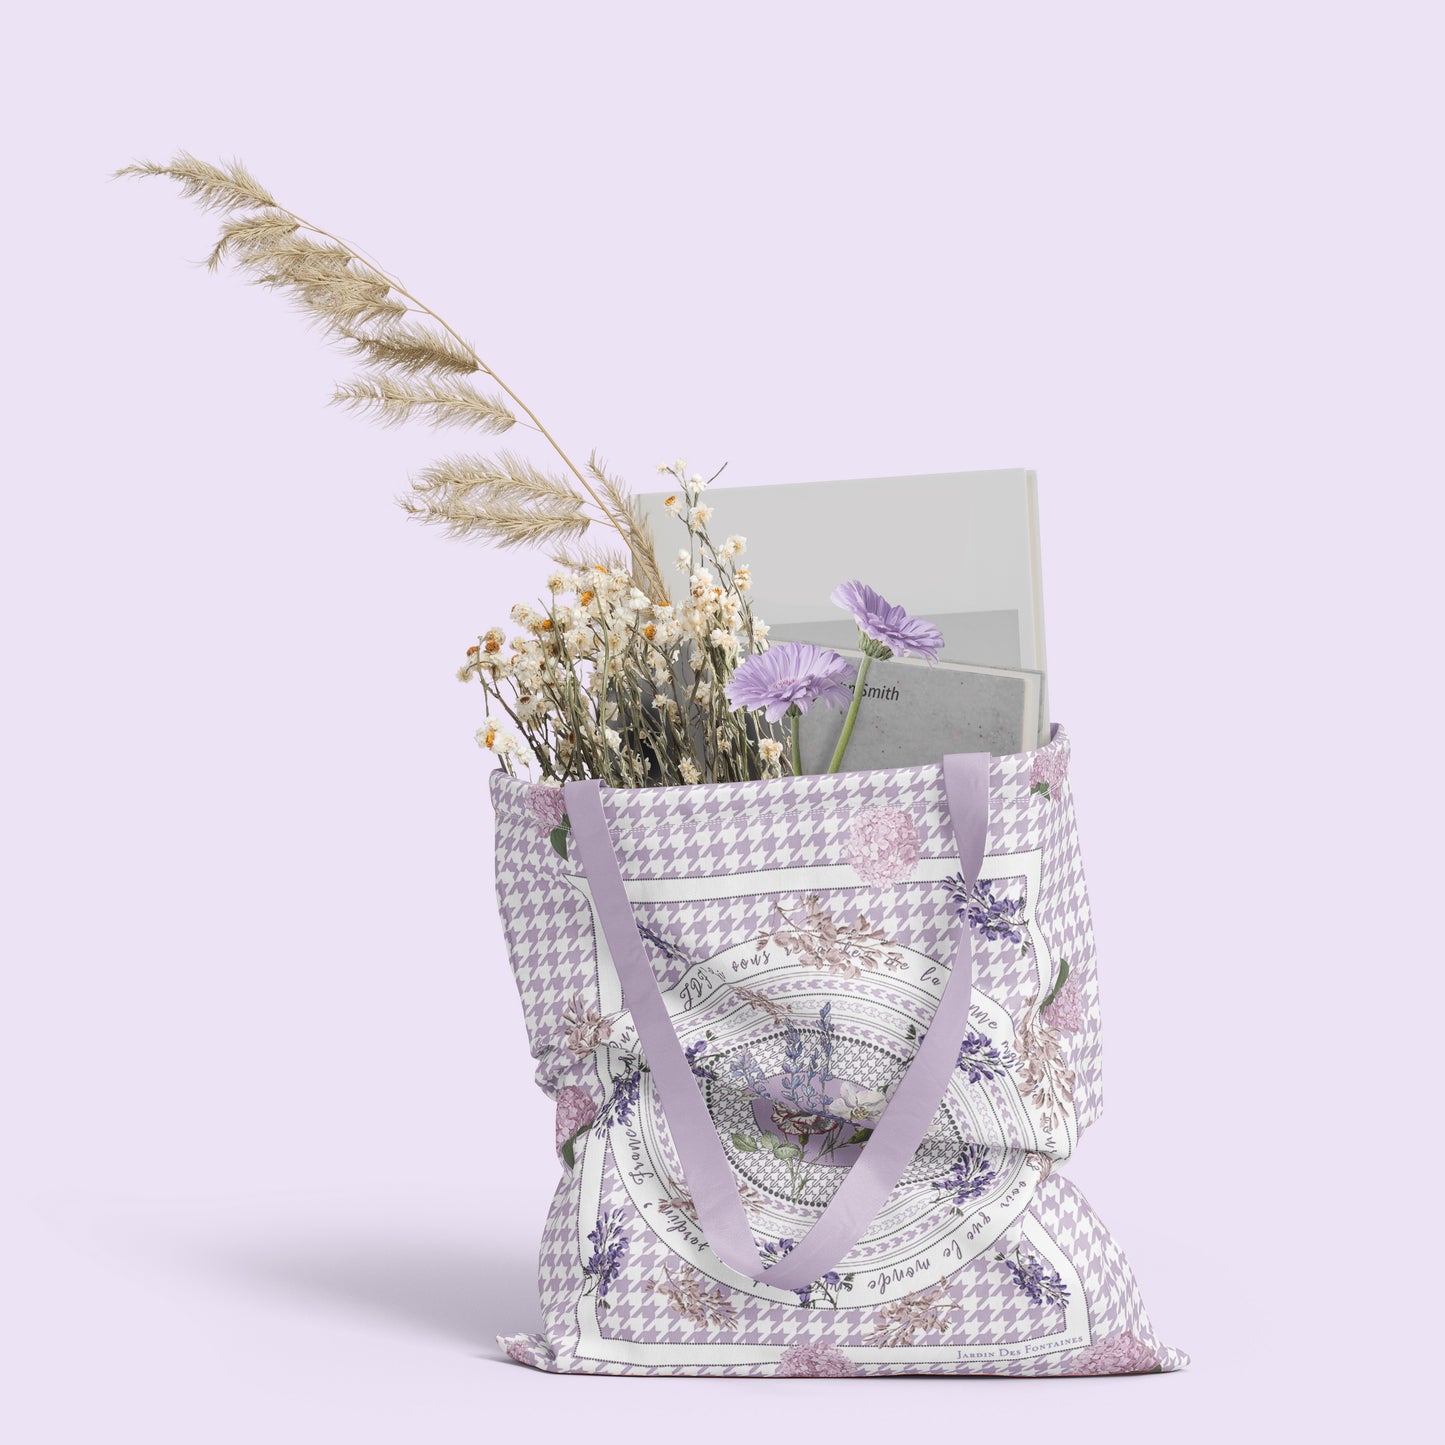 "Secret Violet Garden" Tote Bag